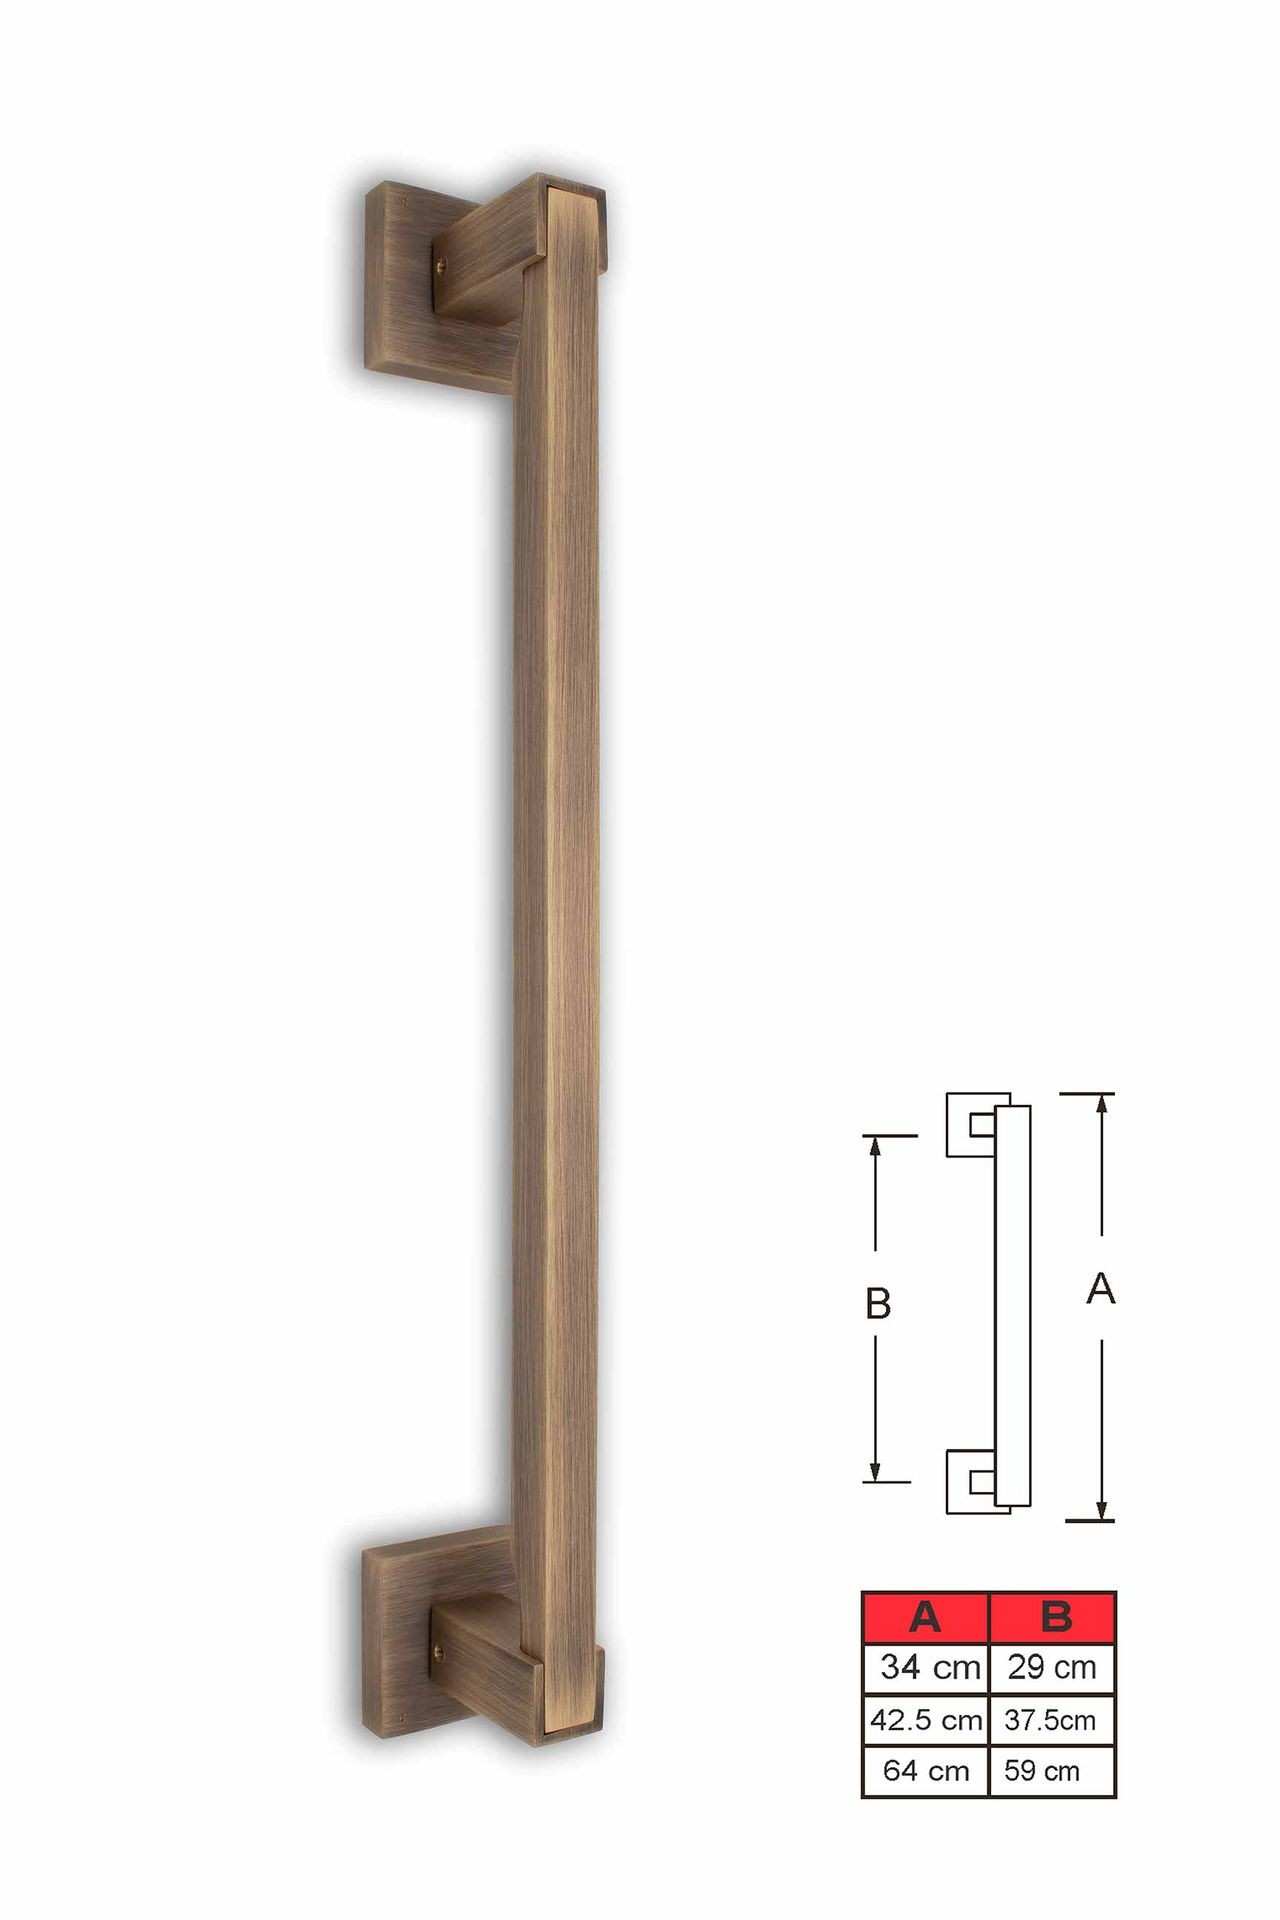 Custom Brass Door Handles: Handcrafted Elegance for Your Entryway